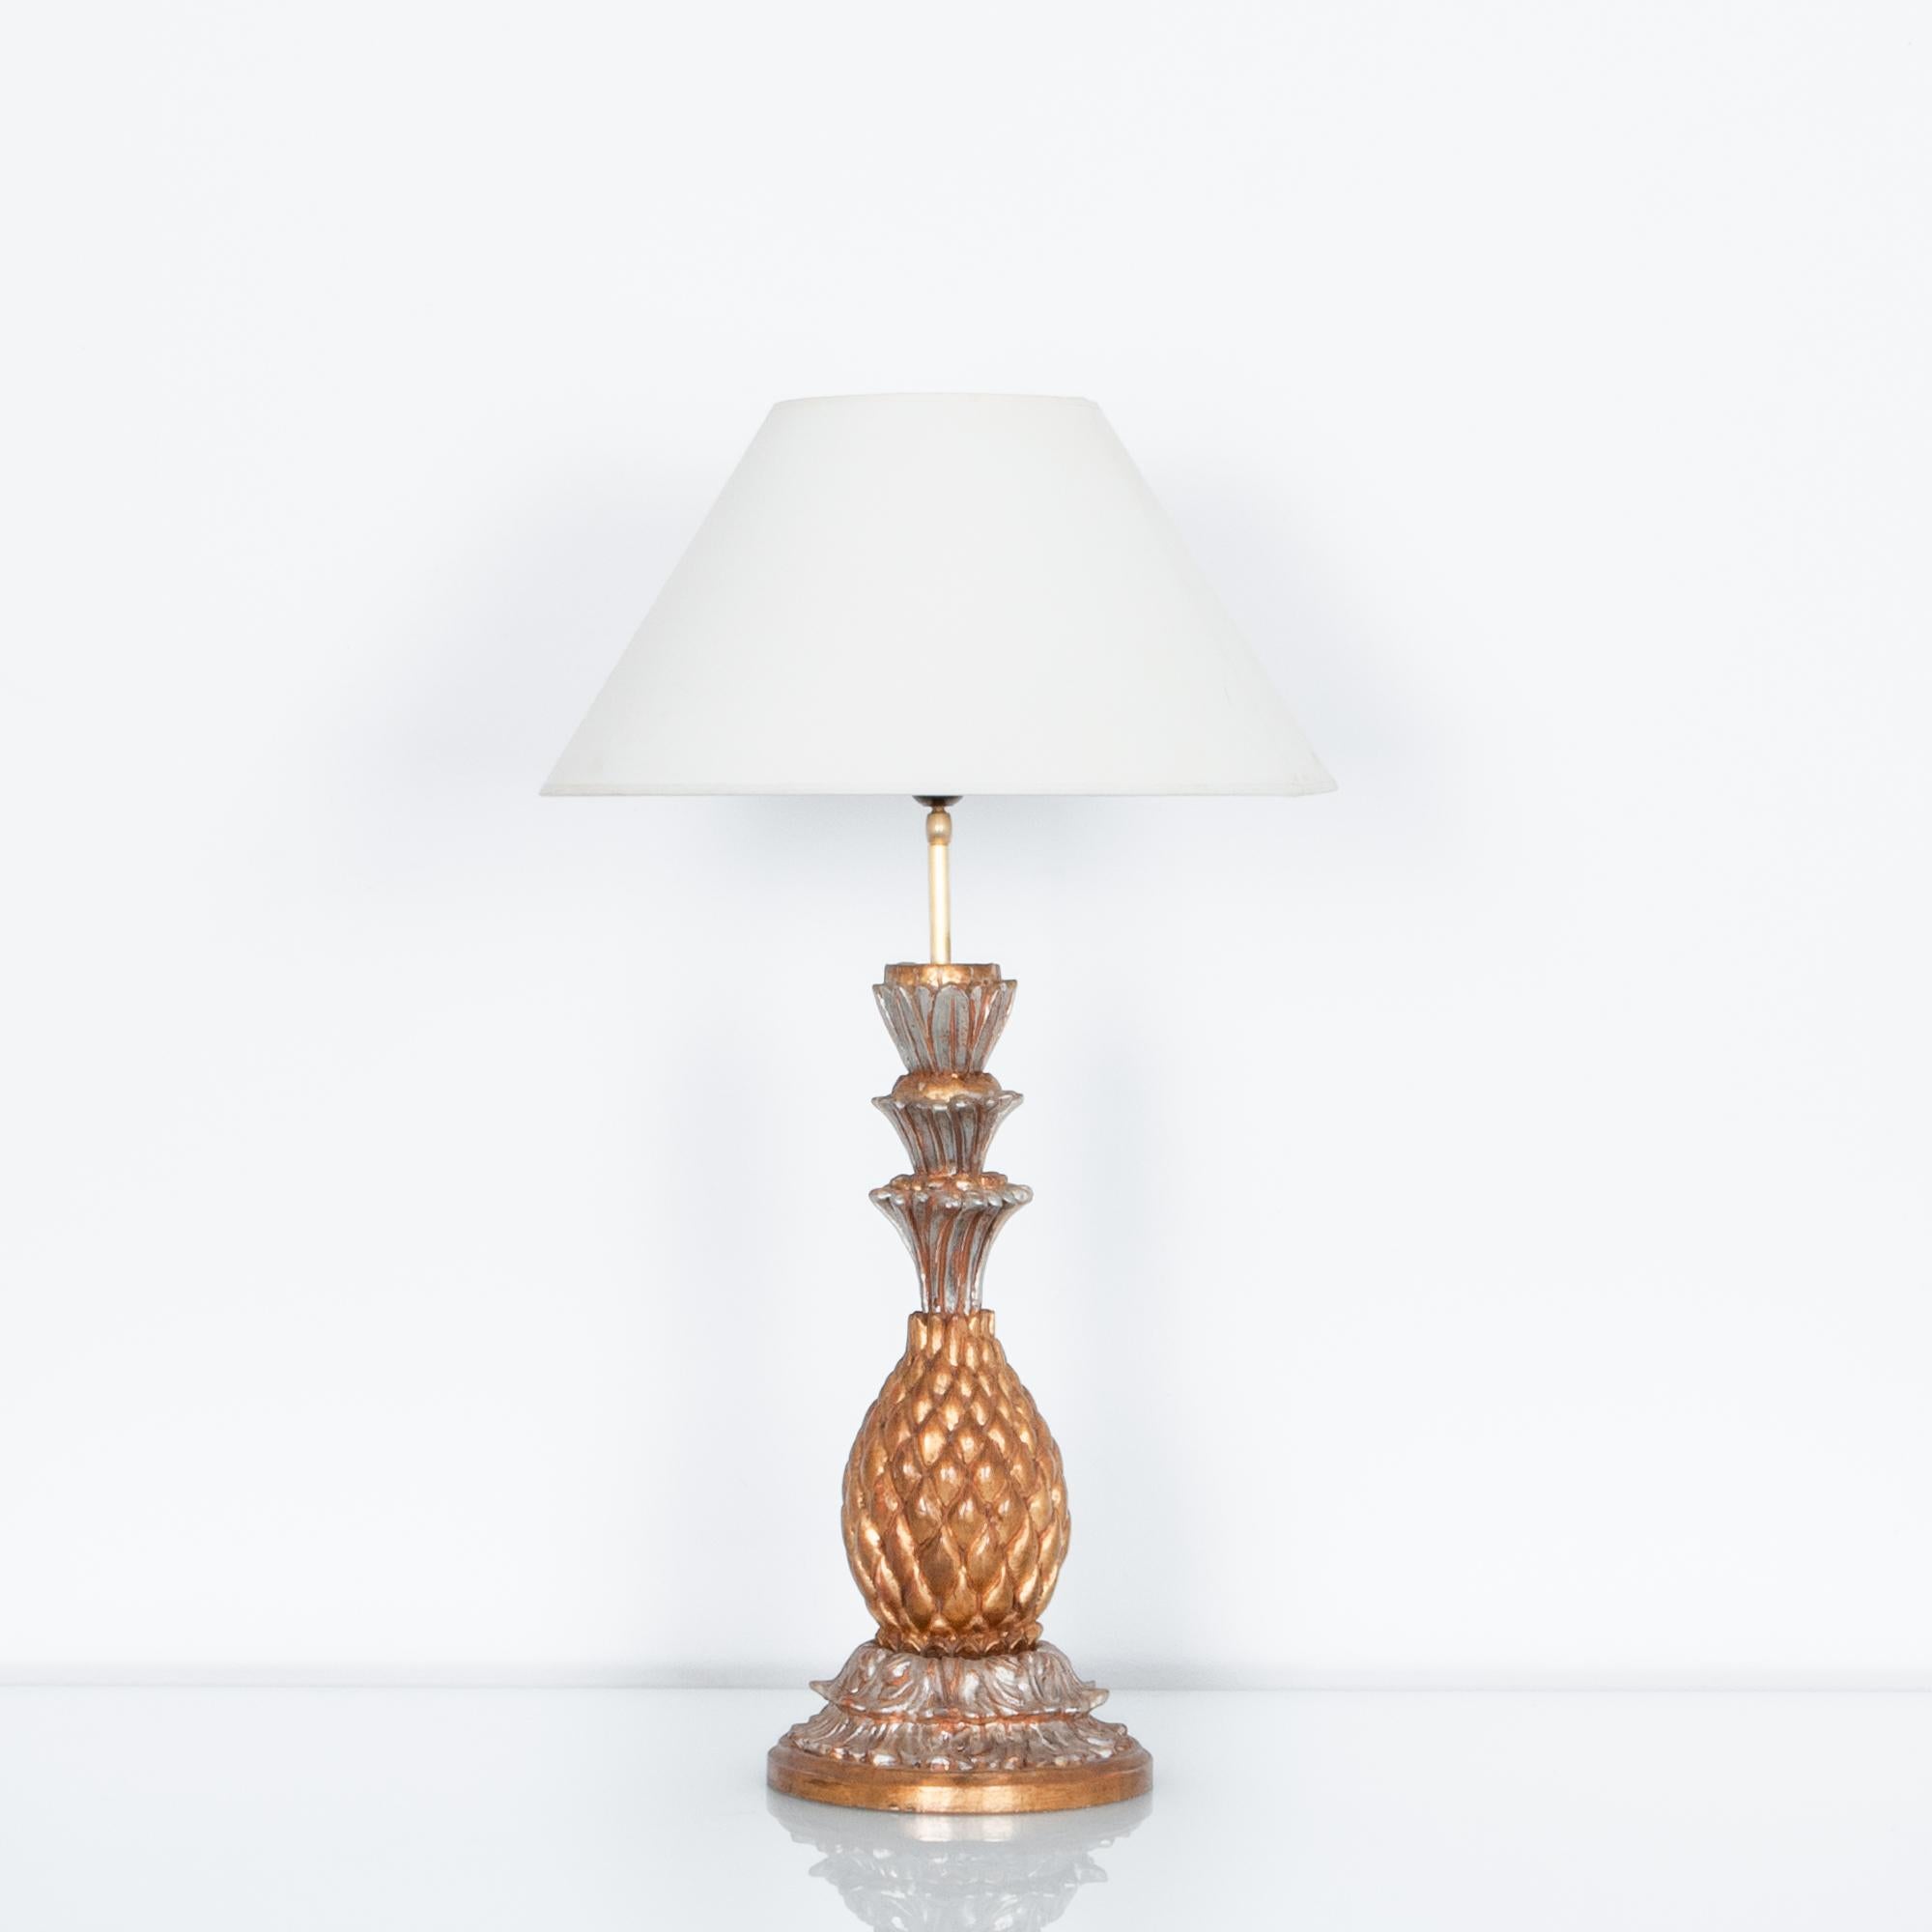 Ce fruit périssable est un symbole historique de richesse et de luxe. Cette lampe française des années 70, peinte avec justesse, représente le motif classique en mode doré. Dans une agréable gamme de tons dorés, cette lampe en bois a été mise à jour